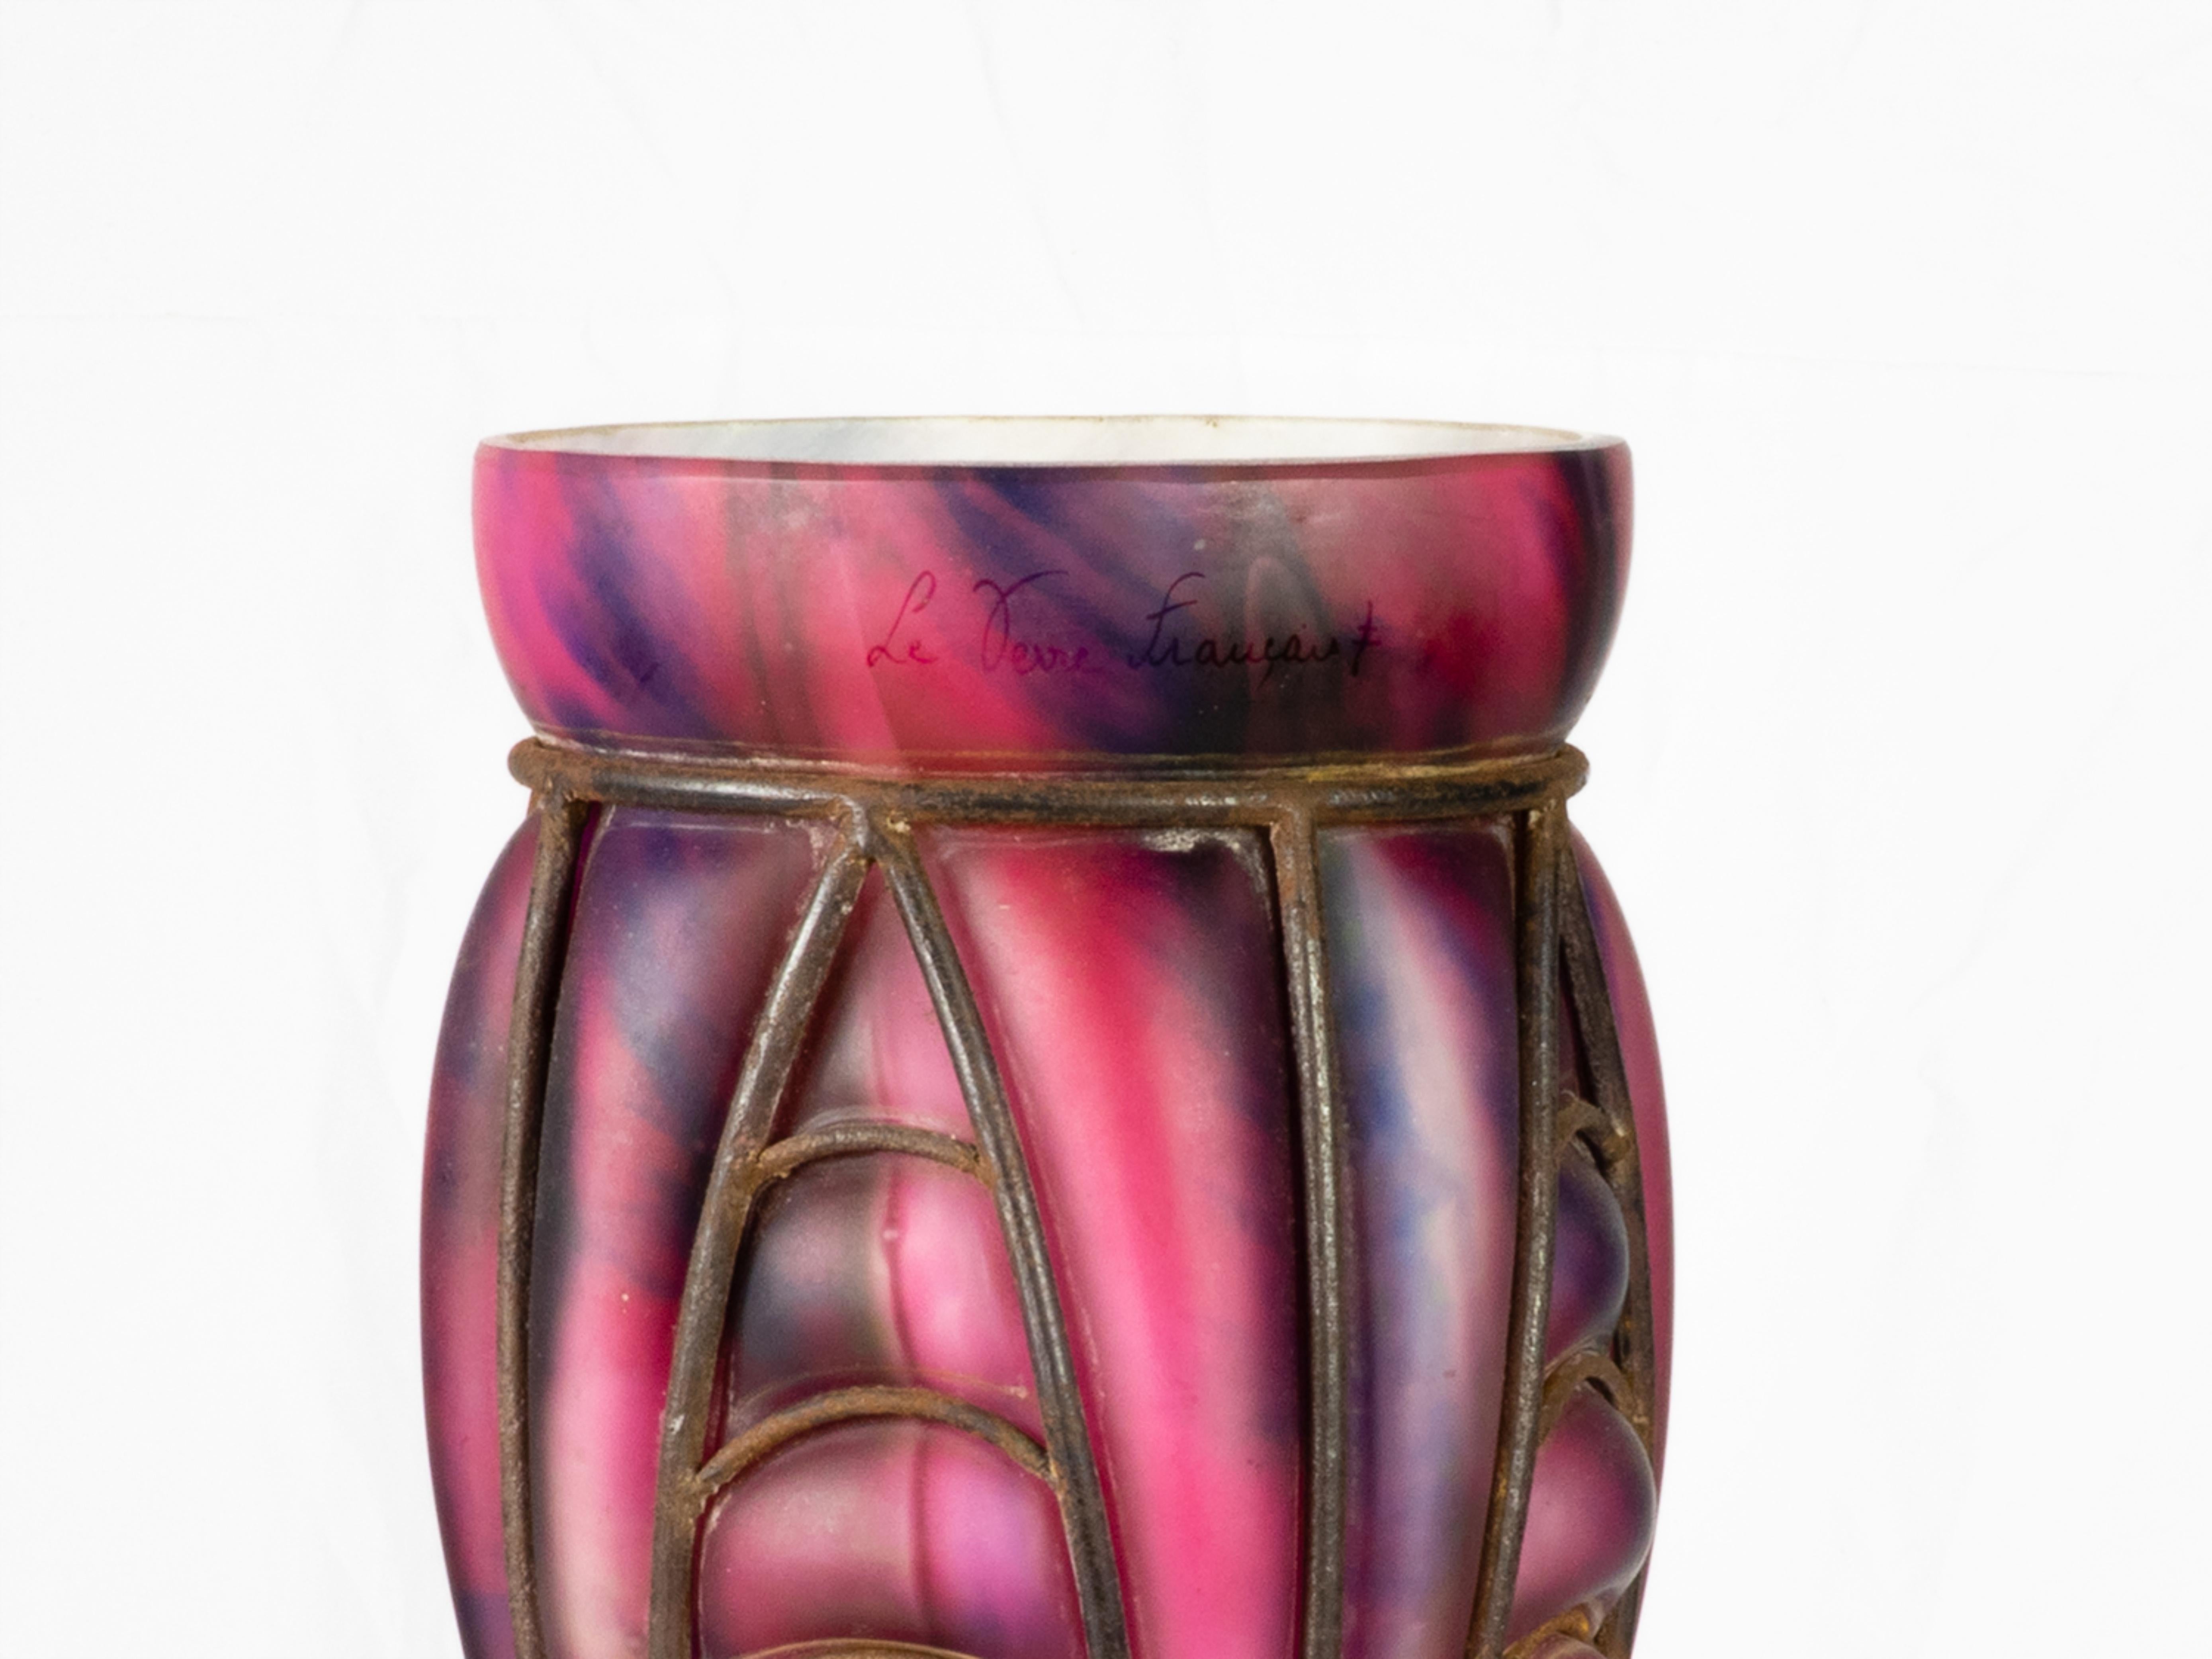 Eine Glasvase der Verrerie D'Art Lorrain mit schmiedeeisernem Panzer im Majorelle-Stil aus Croismare in der Nähe von Nancy, einem der Zentren  der Glasherstellung.
Es zeigt einen rosa und violett marmorierten Oberkörper mit einem graugrünen